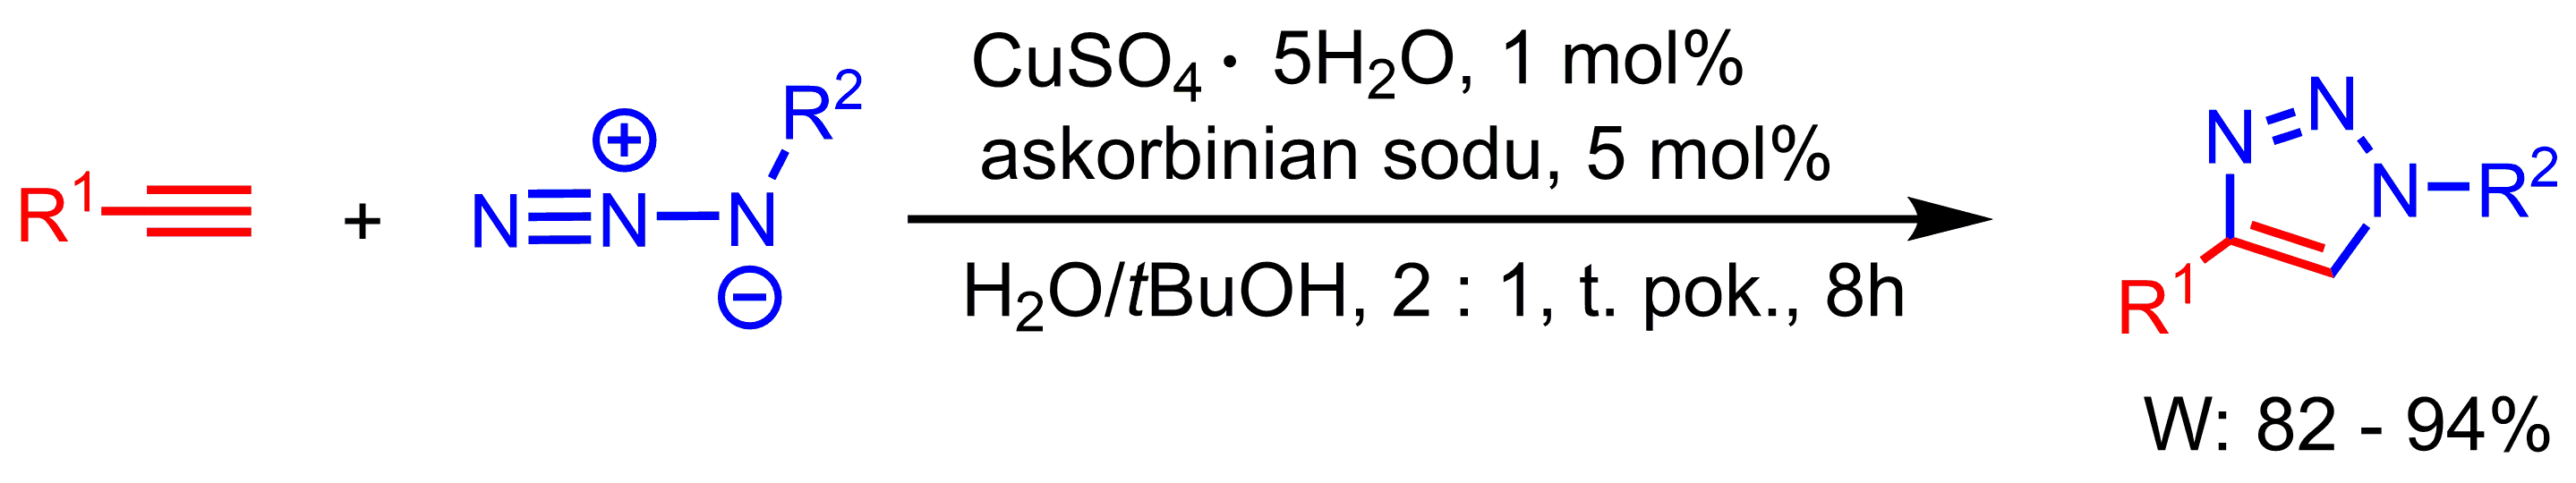 schemat syntezy reakcji chemicznej Sharplessa